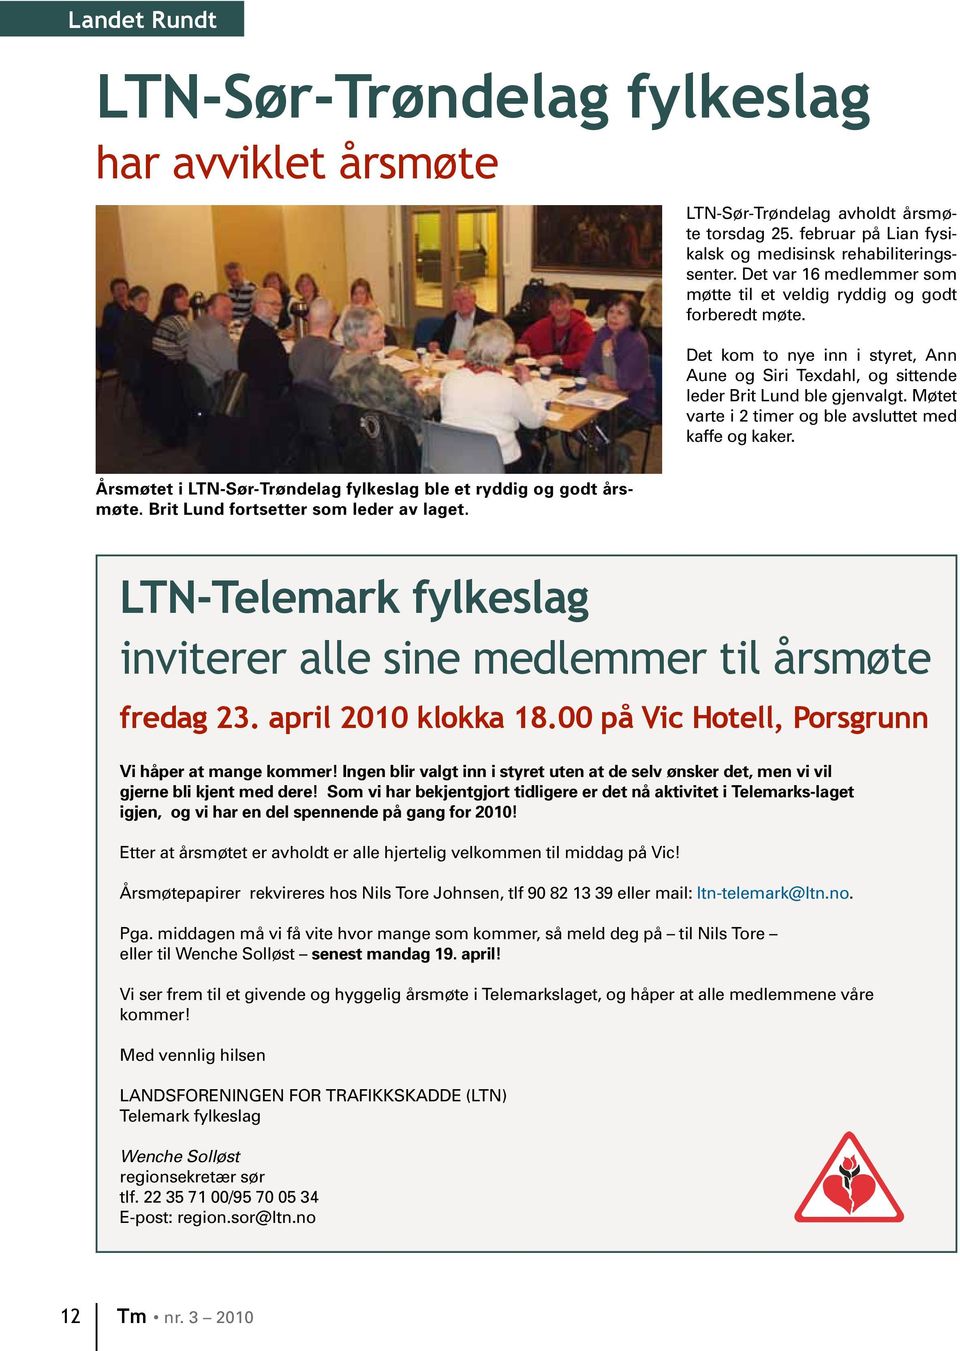 Møtet varte i 2 timer og ble avsluttet med kaffe og kaker. Årsmøtet i LTN-Sør-Trøndelag fylkeslag ble et ryddig og godt årsmøte. Brit Lund fortsetter som leder av laget.